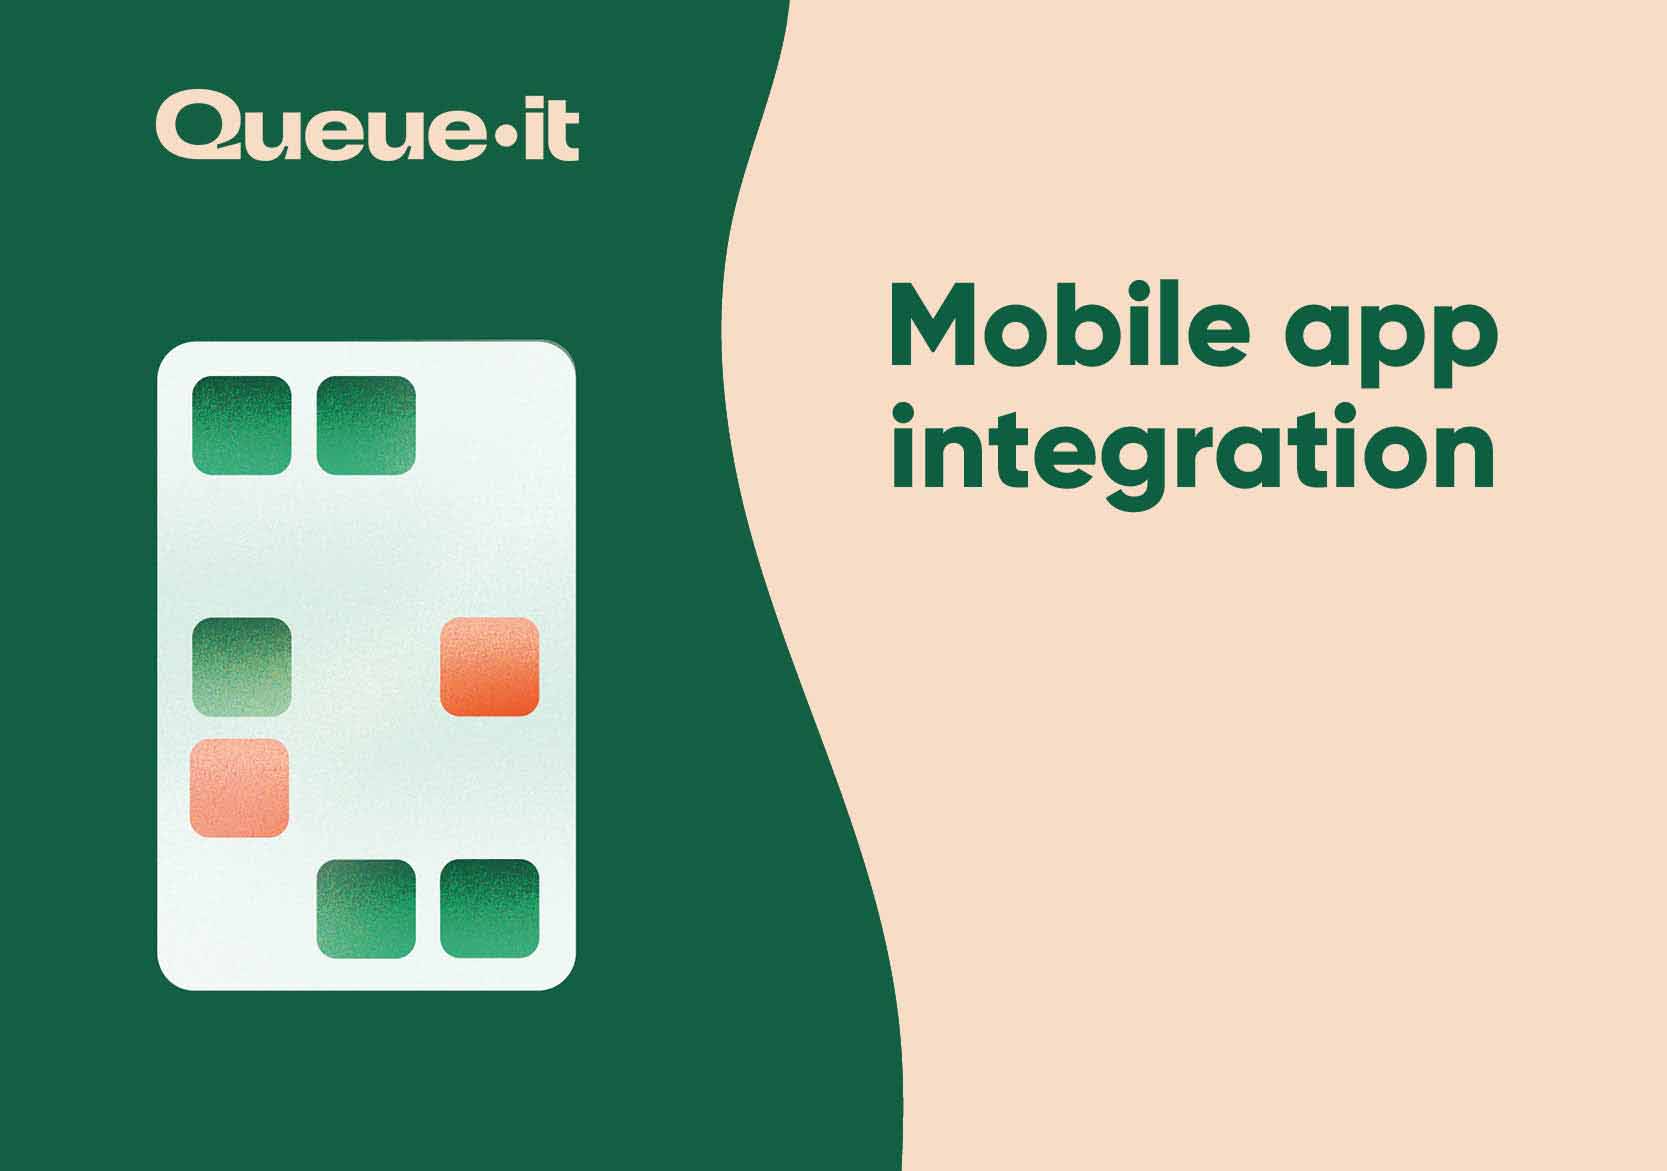 Queue-it Mobile App Integration white paper